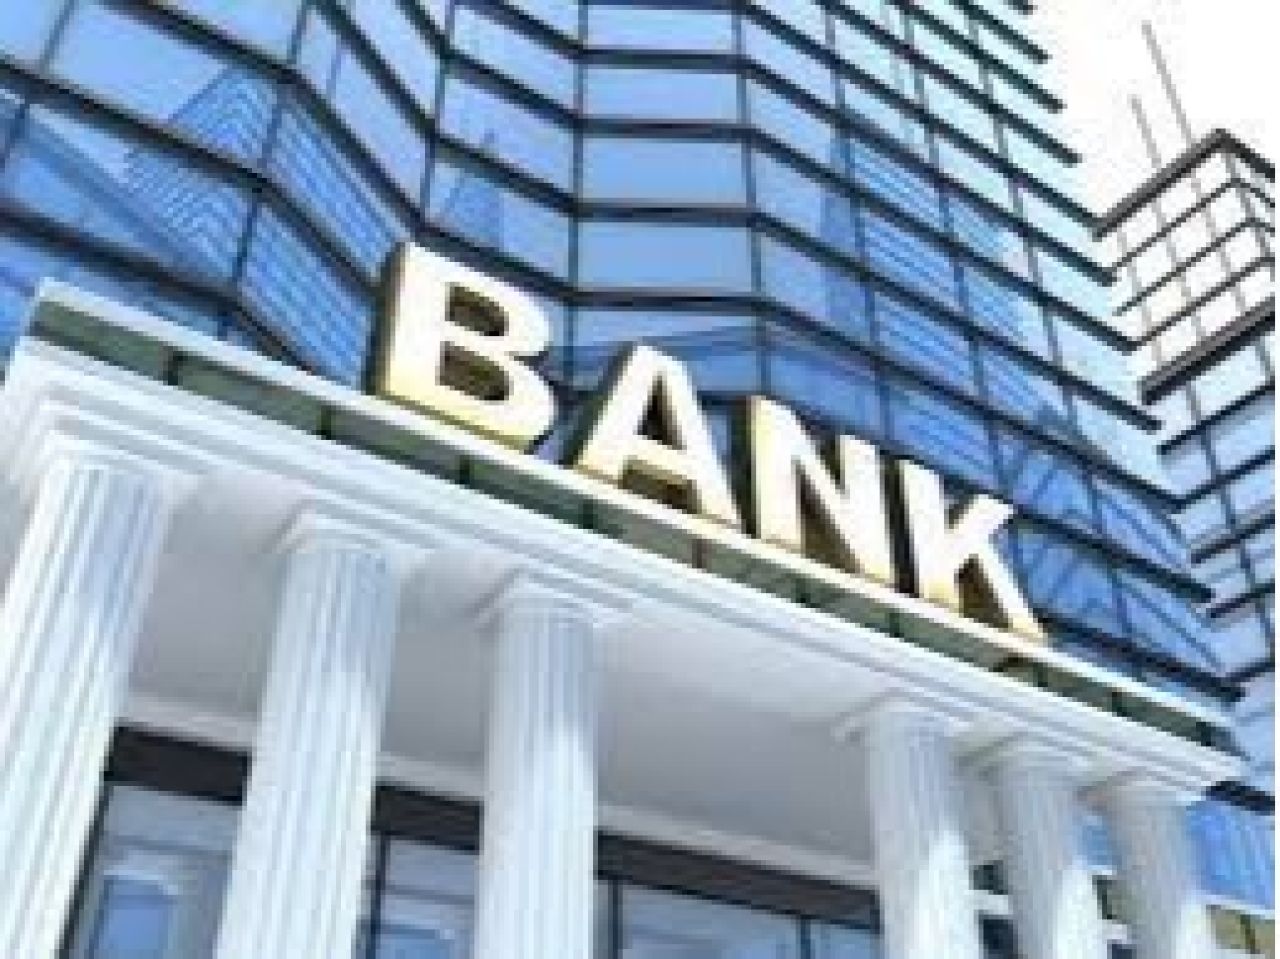 Բանկերի խնդիրն է ապահովել վճարումների անվտանգությունը և բավարարել սպառողների ակնկալիքները